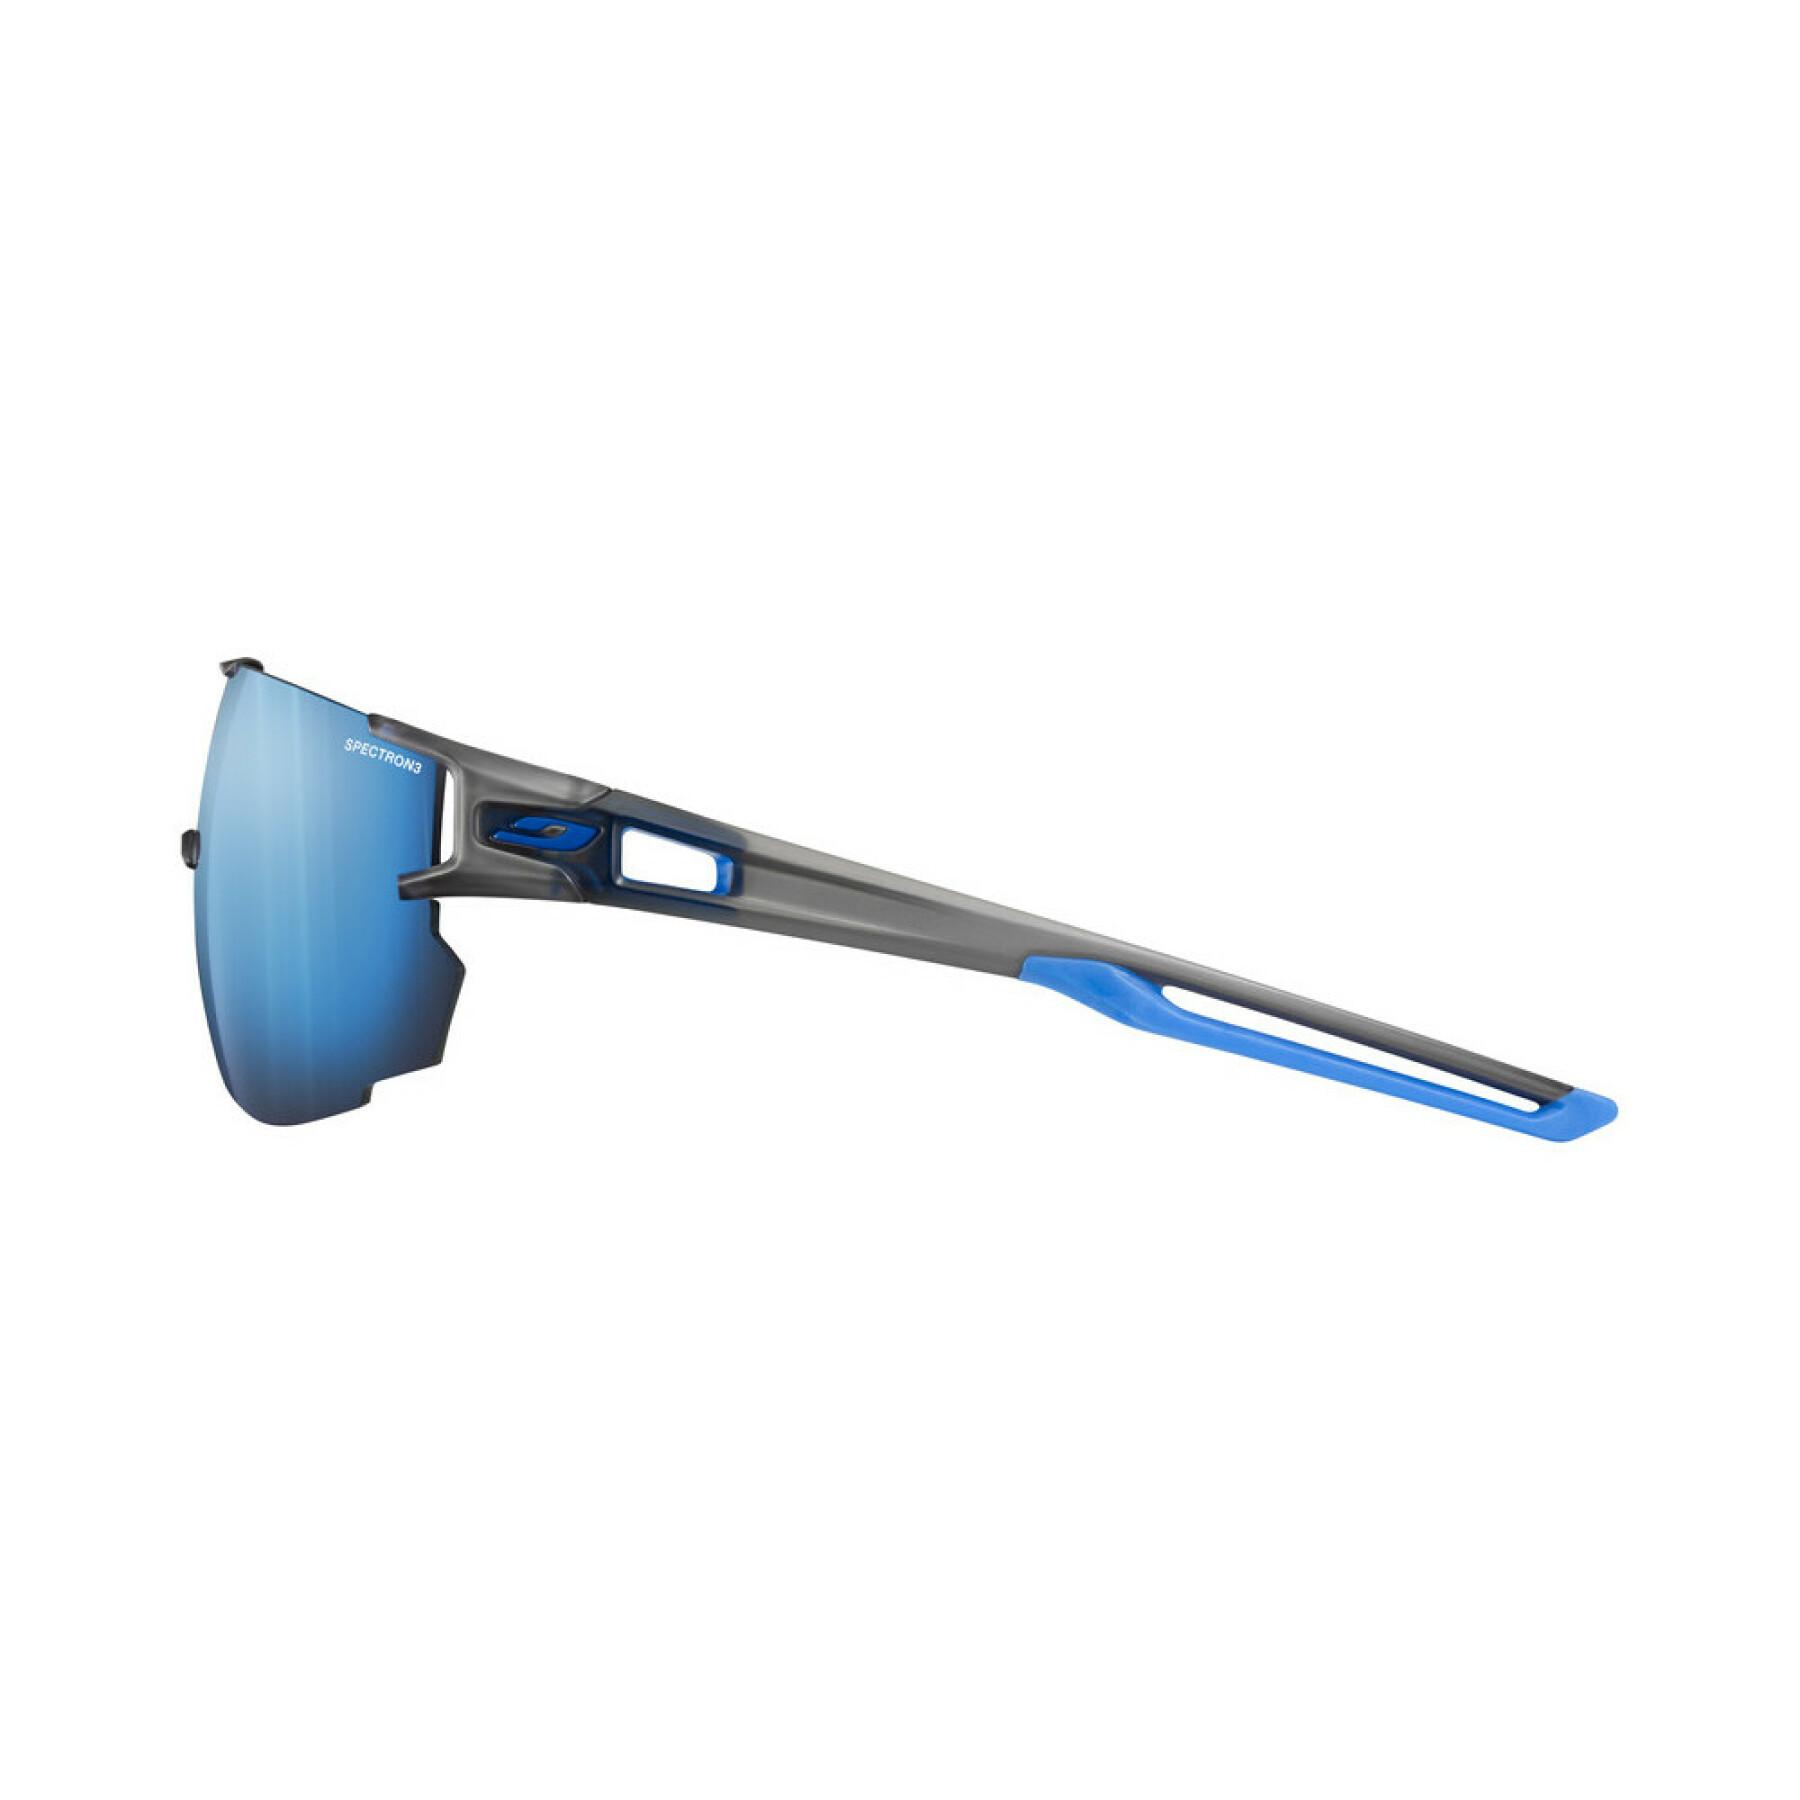 Sunglasses Julbo Aerospeed Spectron 3